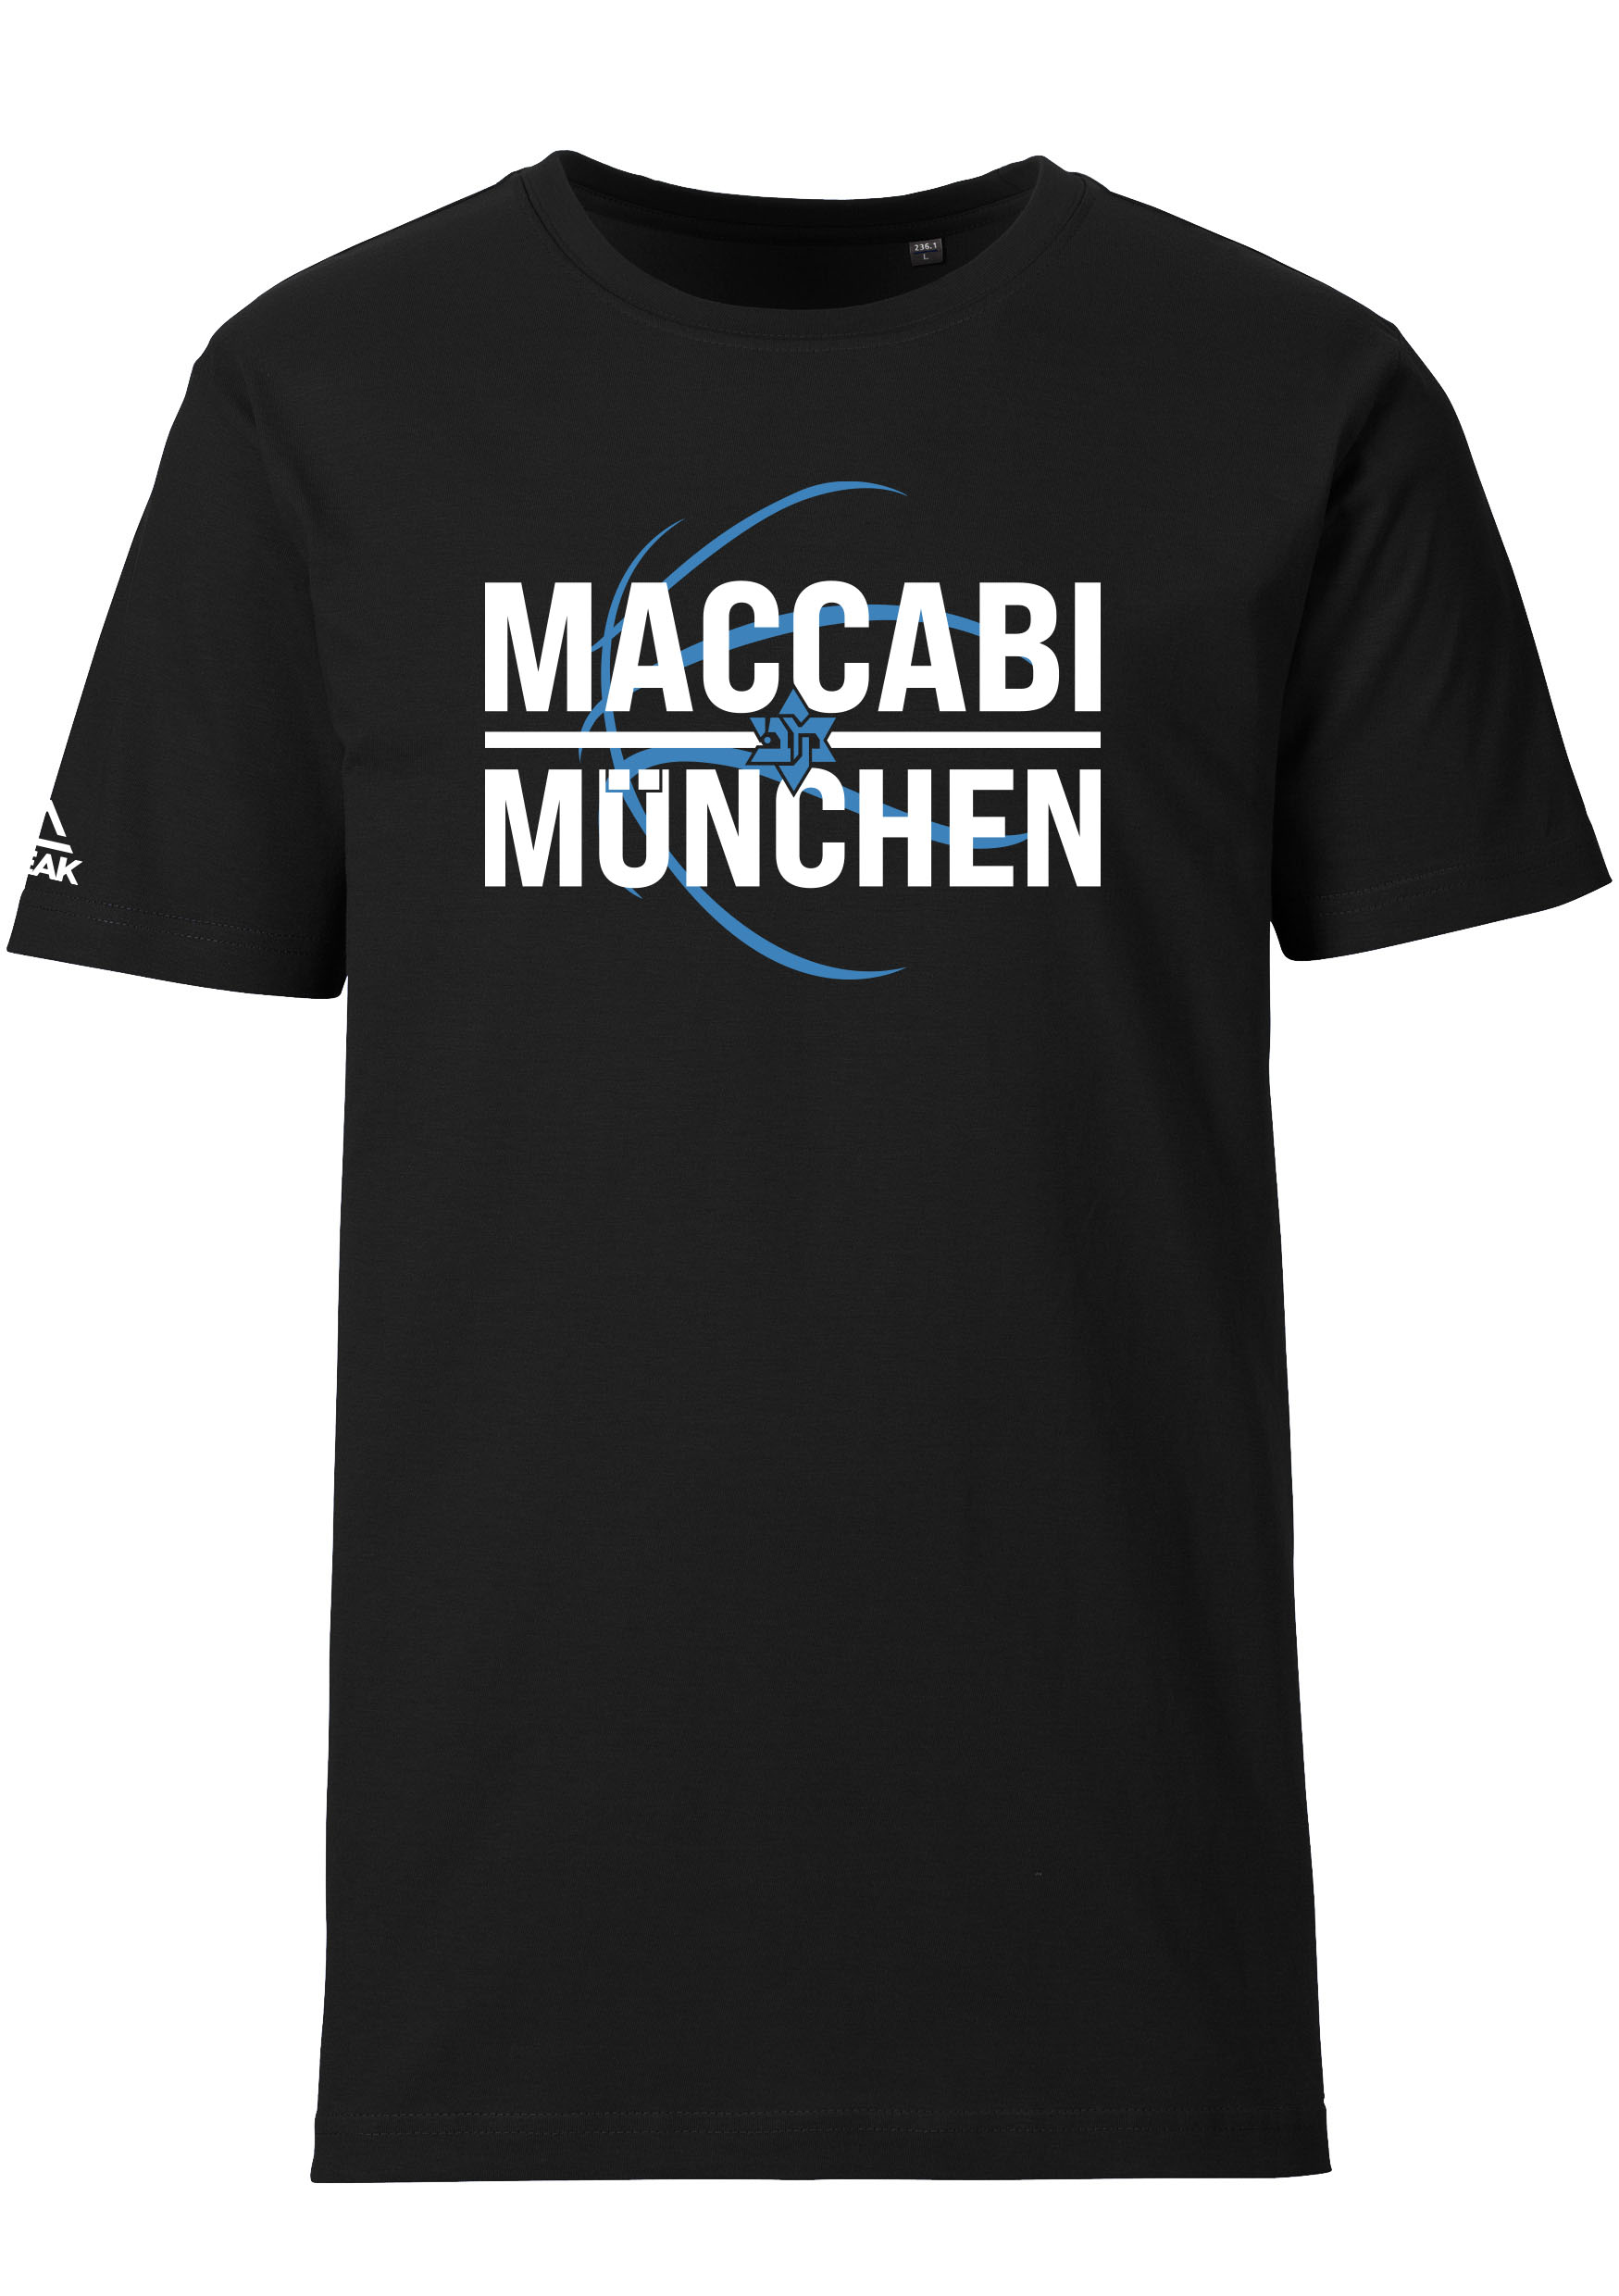 Maccabi München T-Shirt Kids schwarz